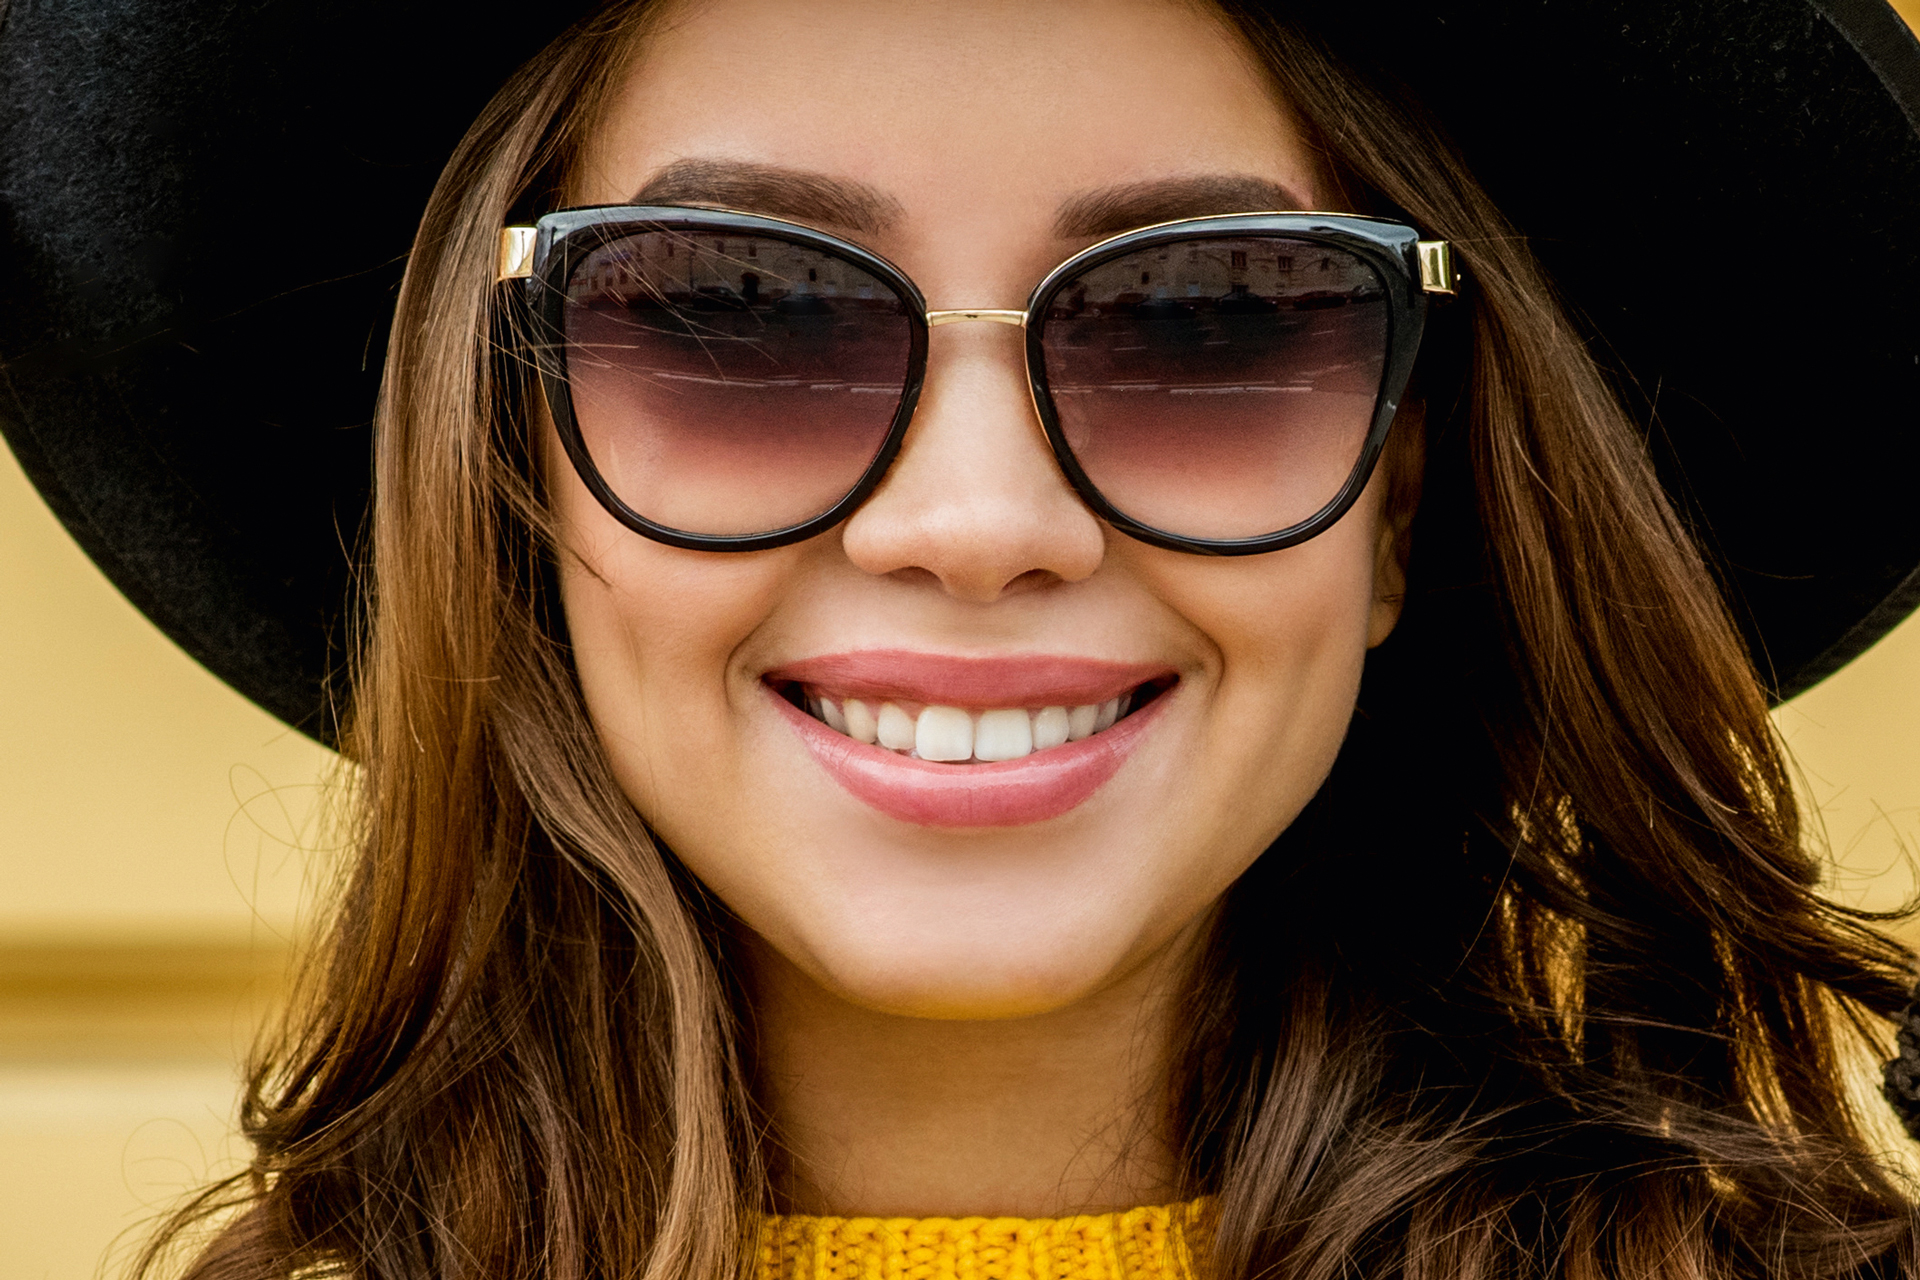 A napszemüveg nem csupán egyszerű divatkiegészítő – fontos, hogy védelmet nyújtson szemének a káros UV-sugárzással szemben.